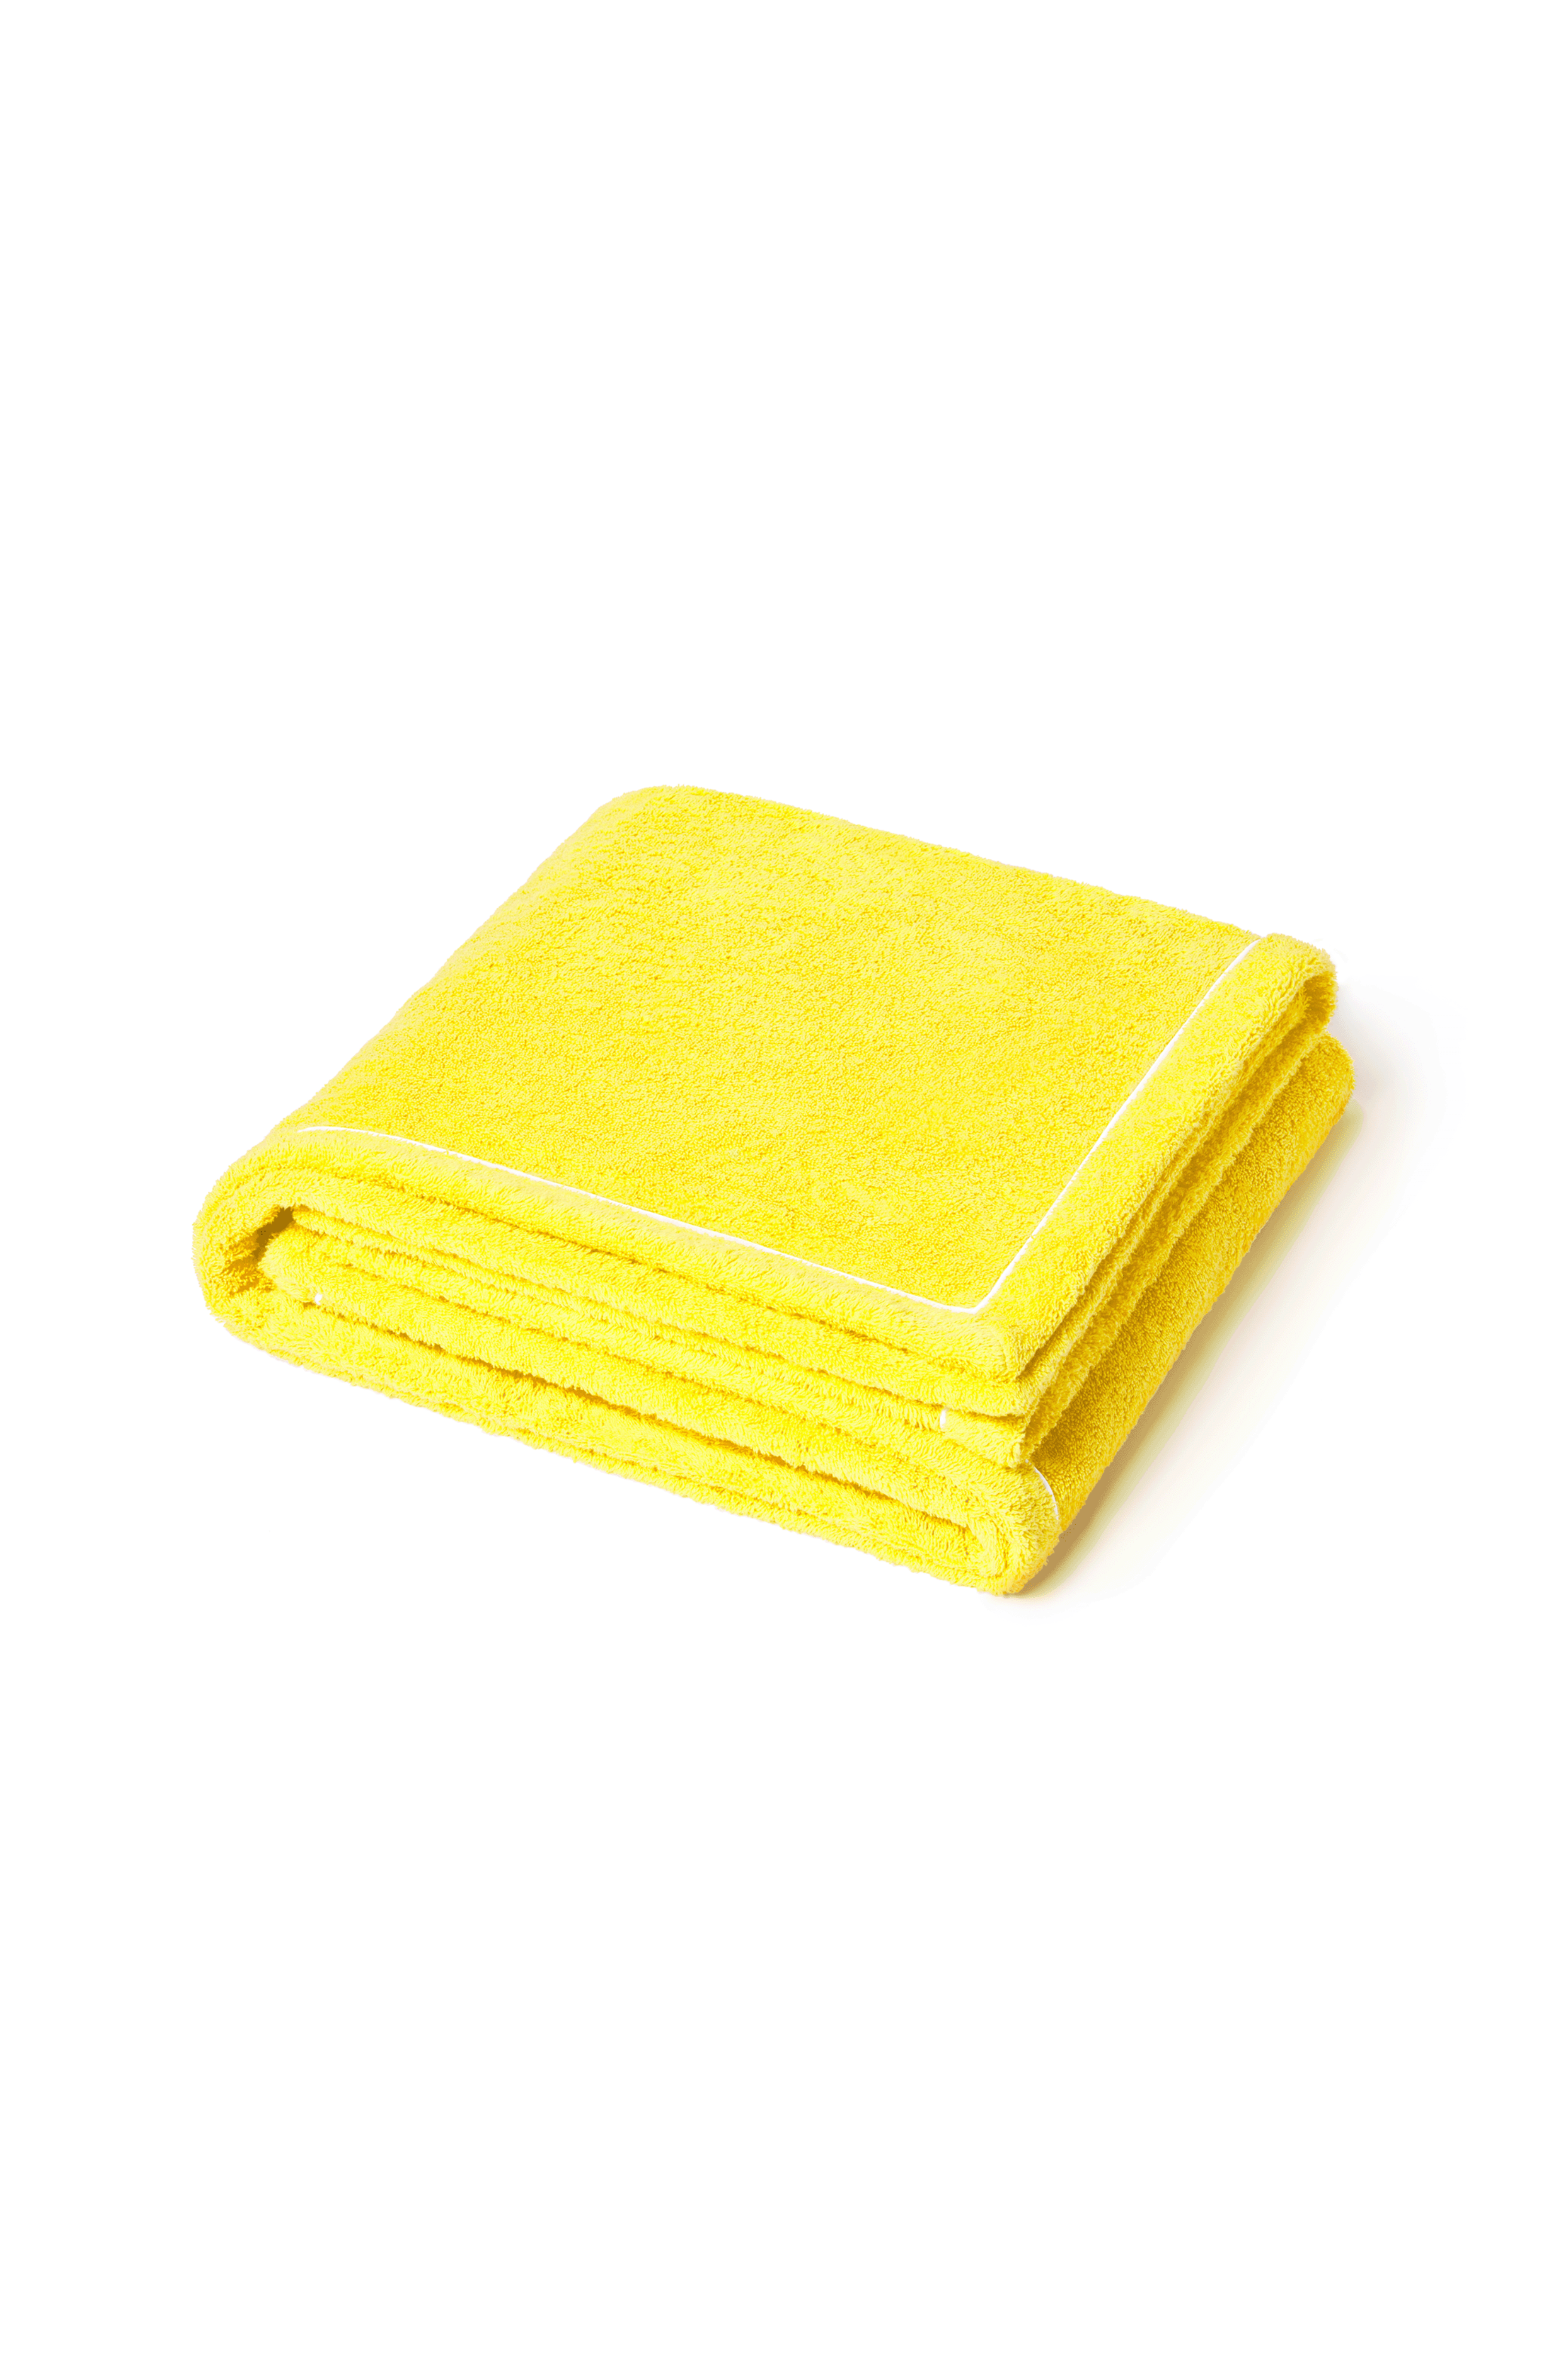 Zénith deckchair towel